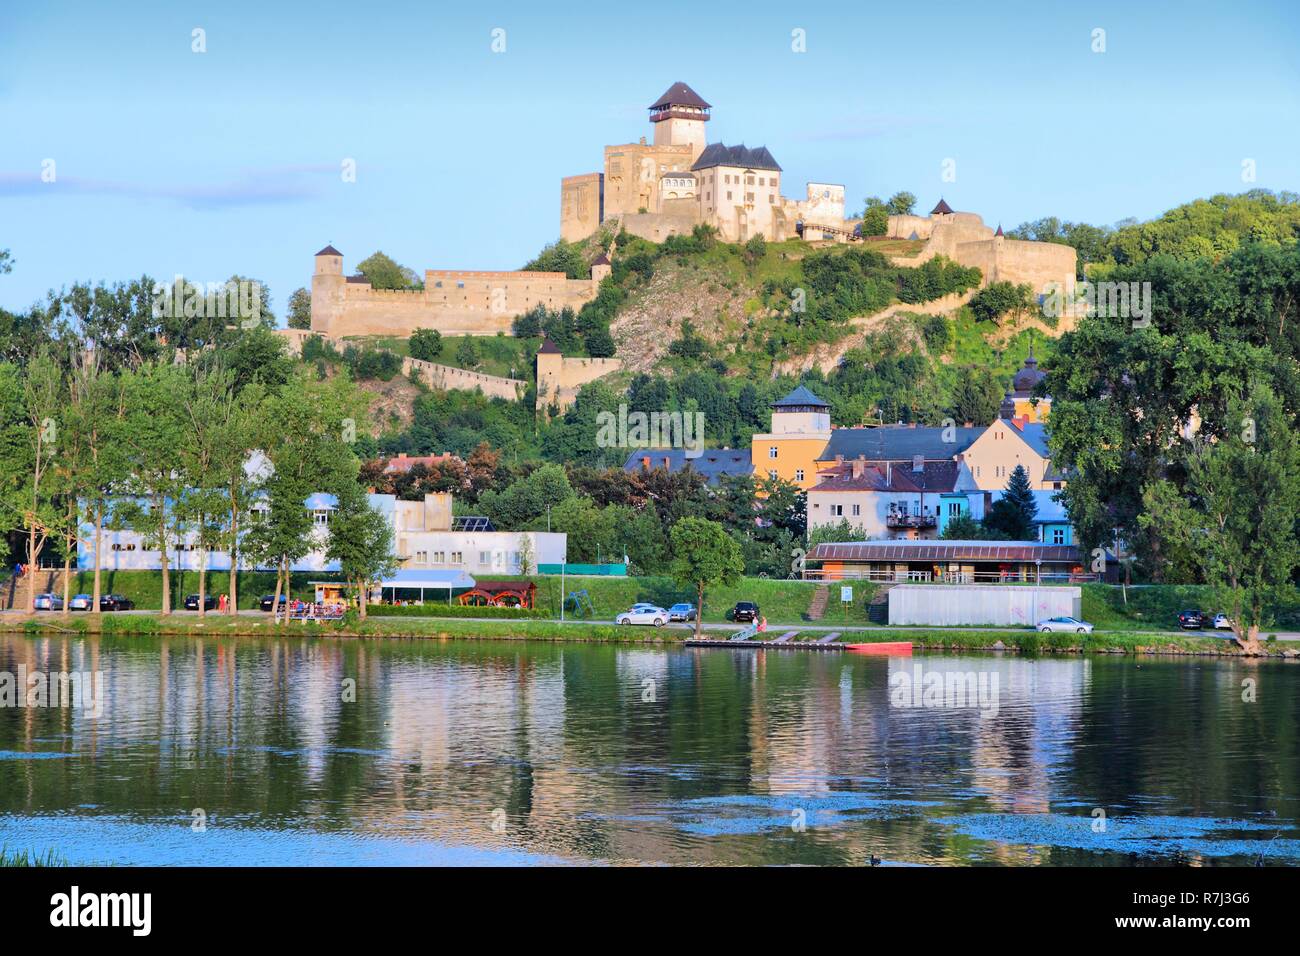 Trencin, città in Slovacchia nella regione di Povazie. Castello su una collina e fiume Vah. Foto Stock